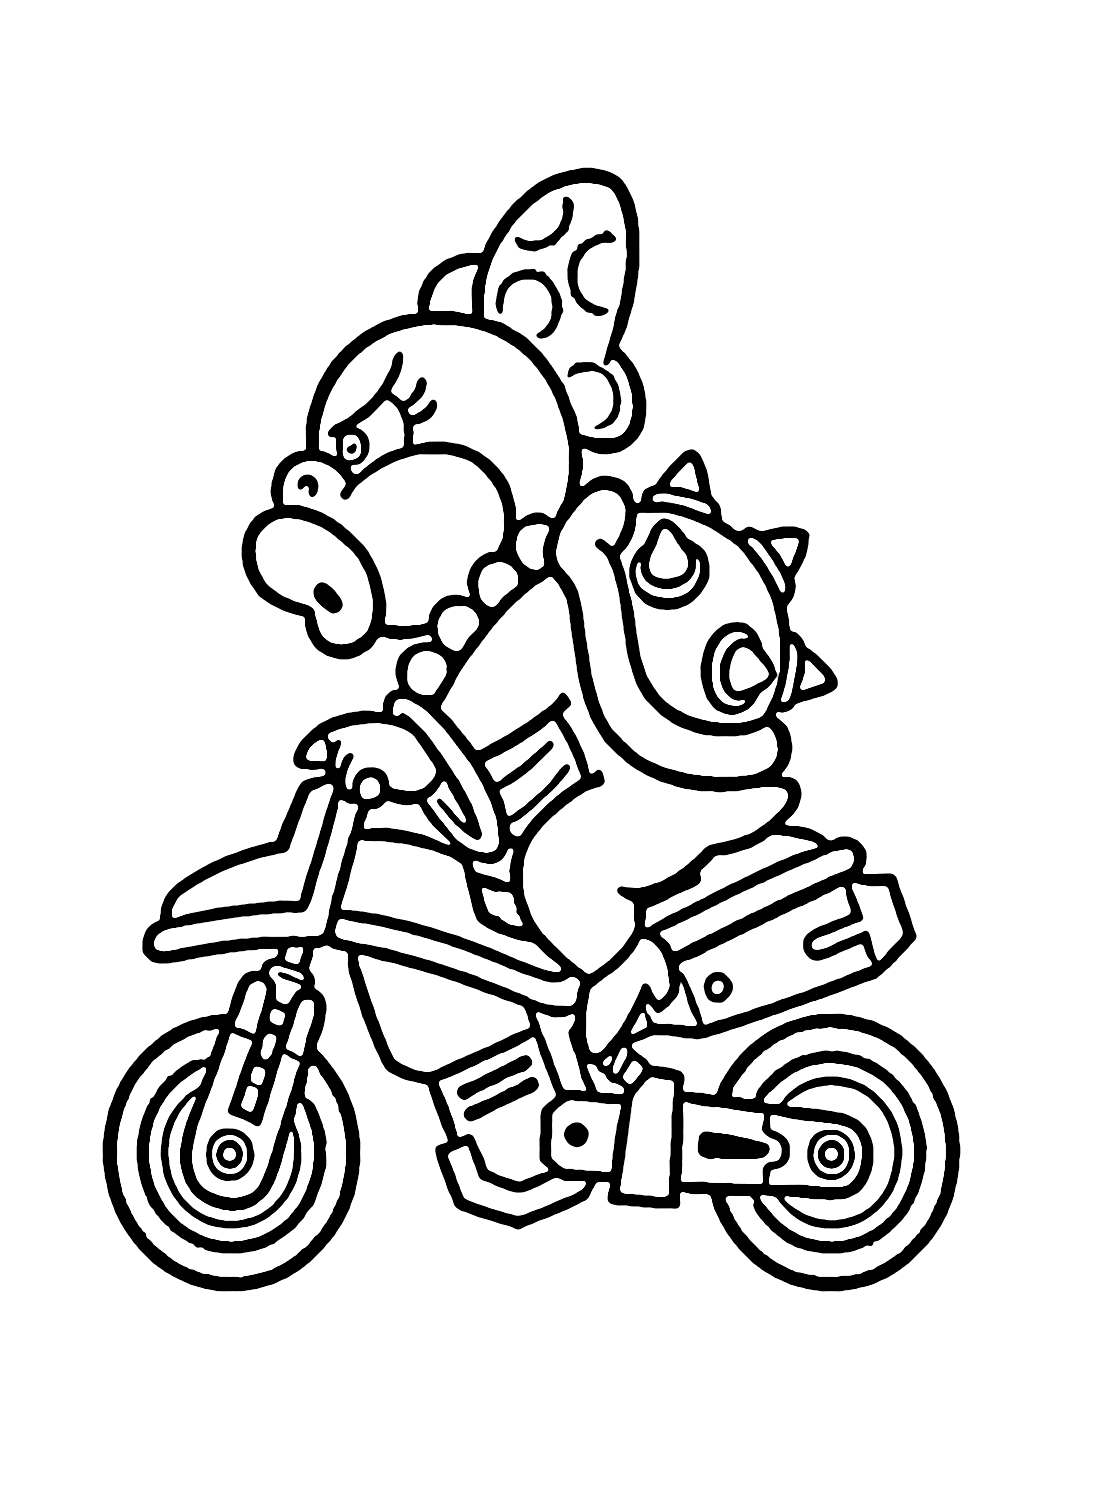 Венди Марио Карт из Mario Kart